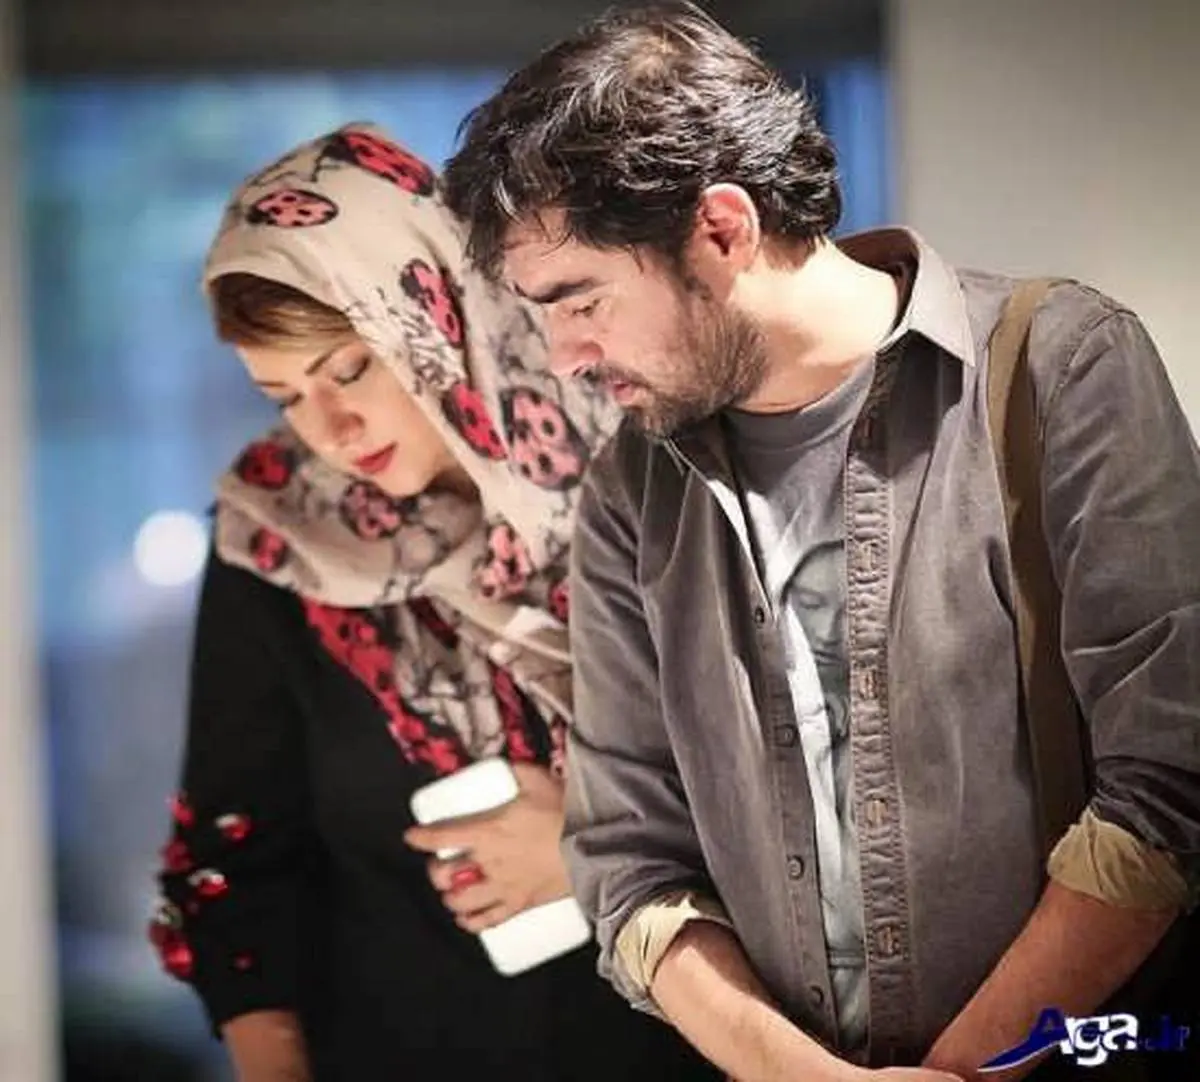 پریچهره قنبری در کنار پسرش در آمریکا  | همسر سابق شهاب حسینی بعد از طلاق جذاب تر از قبل شده است+ویدیو